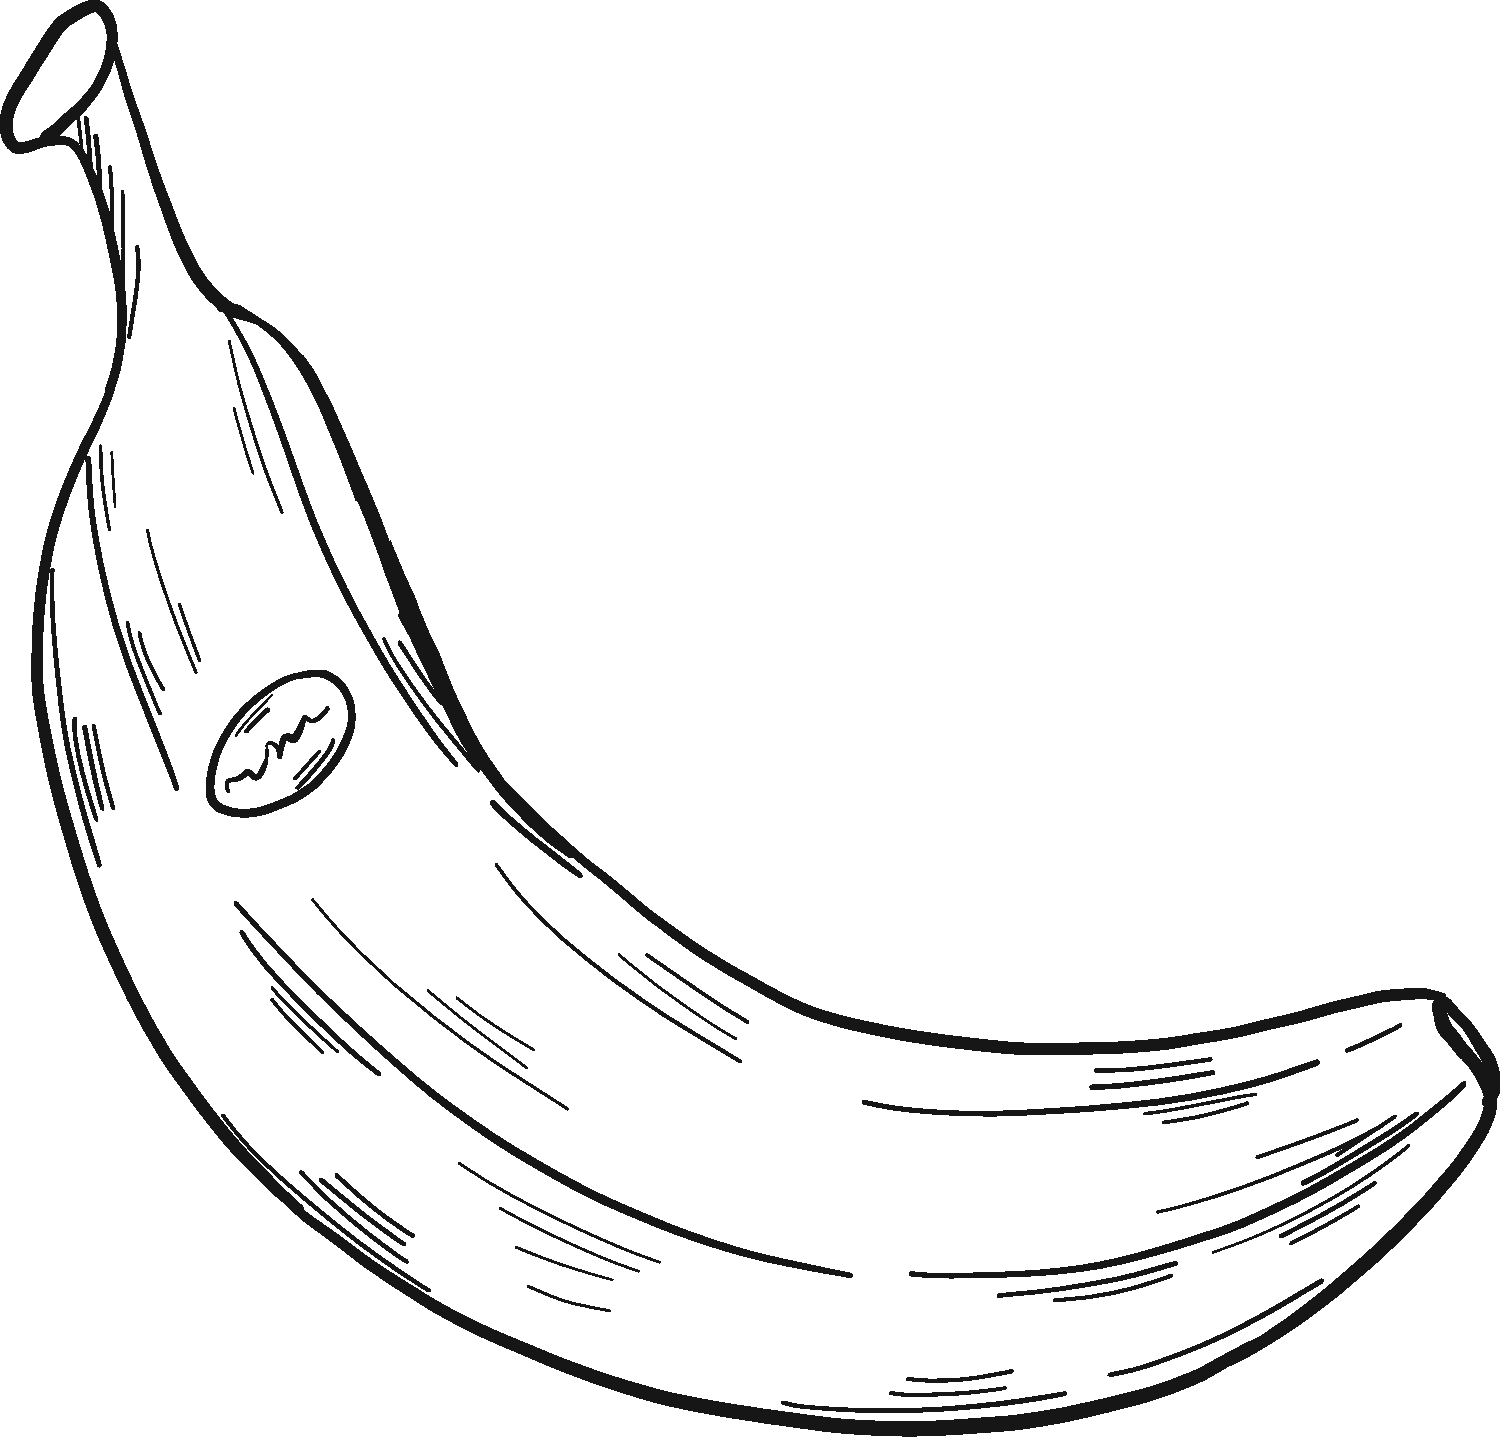 A Banana Coloring Page